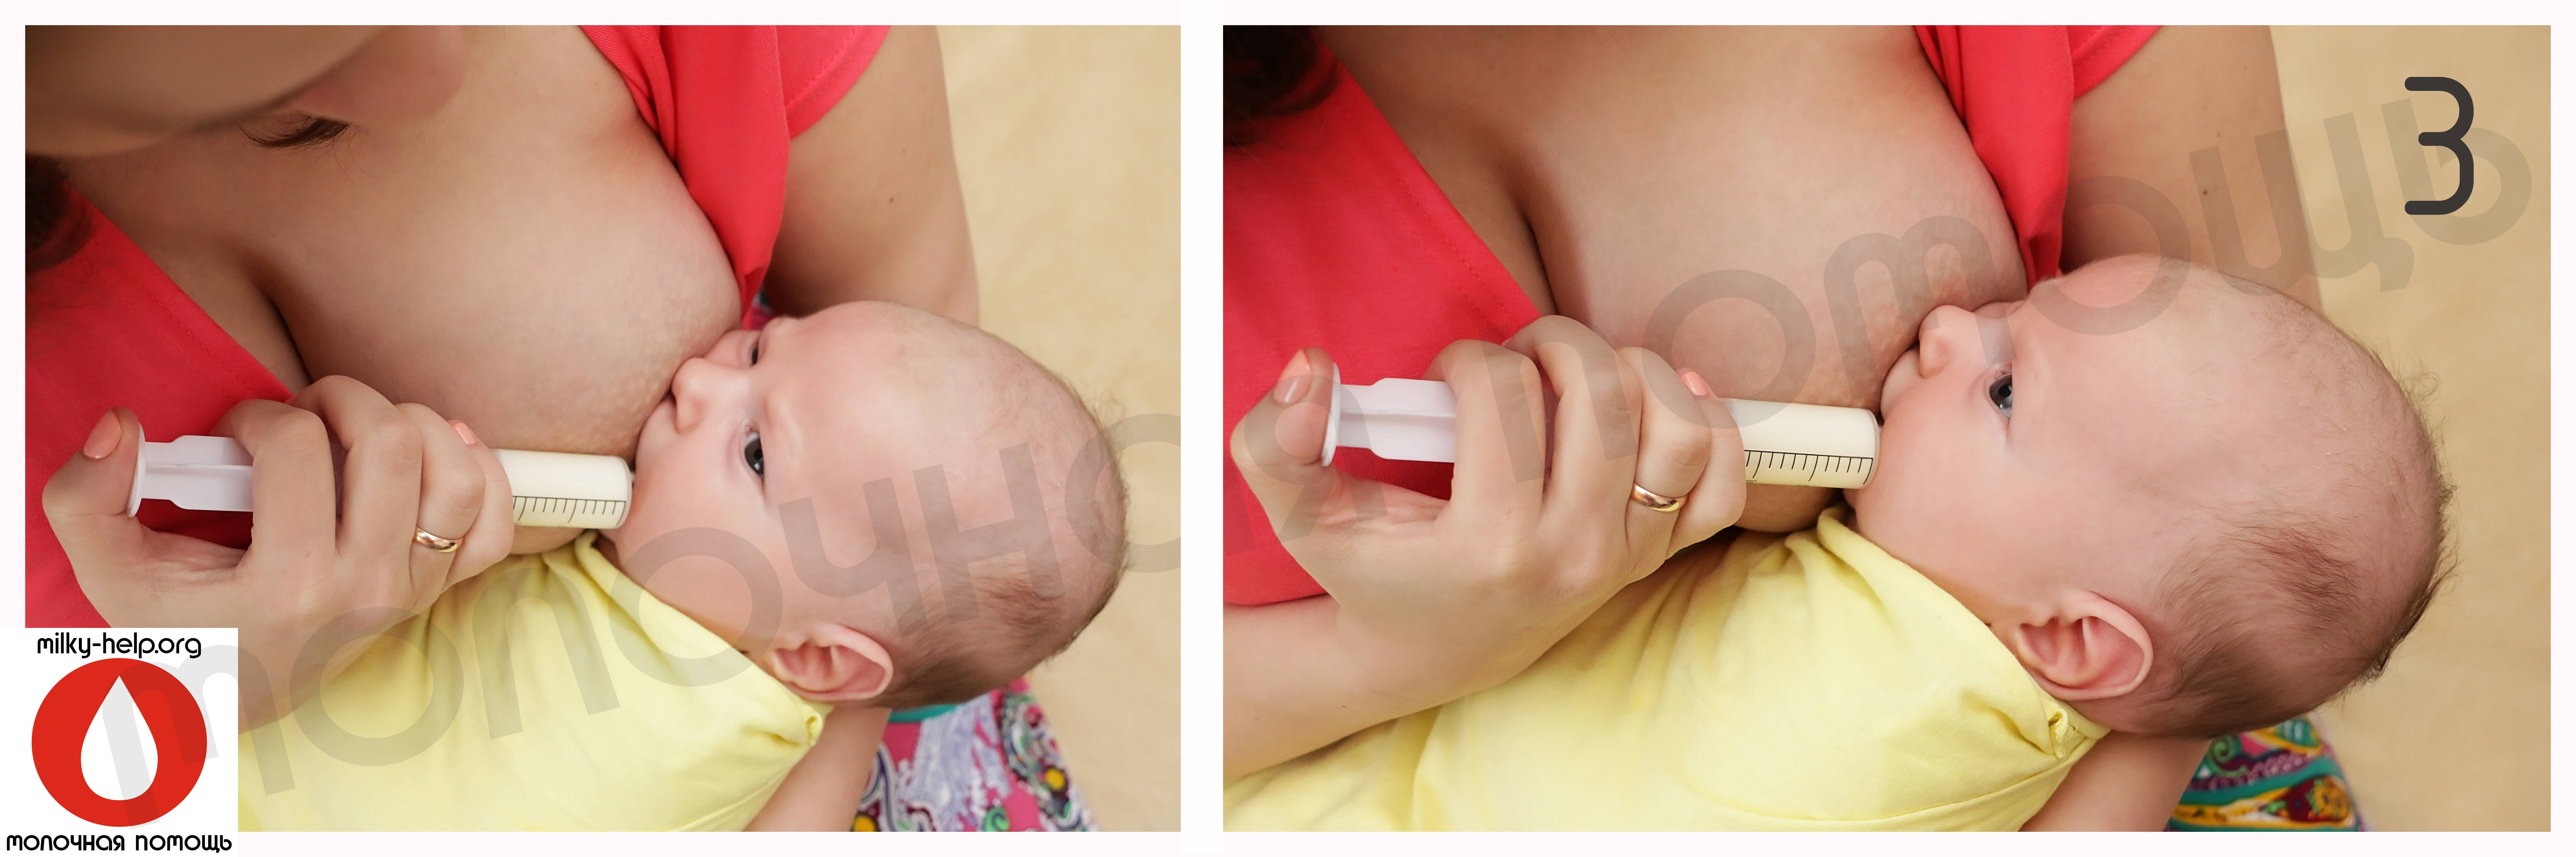 упругая грудь во время беременности фото 47